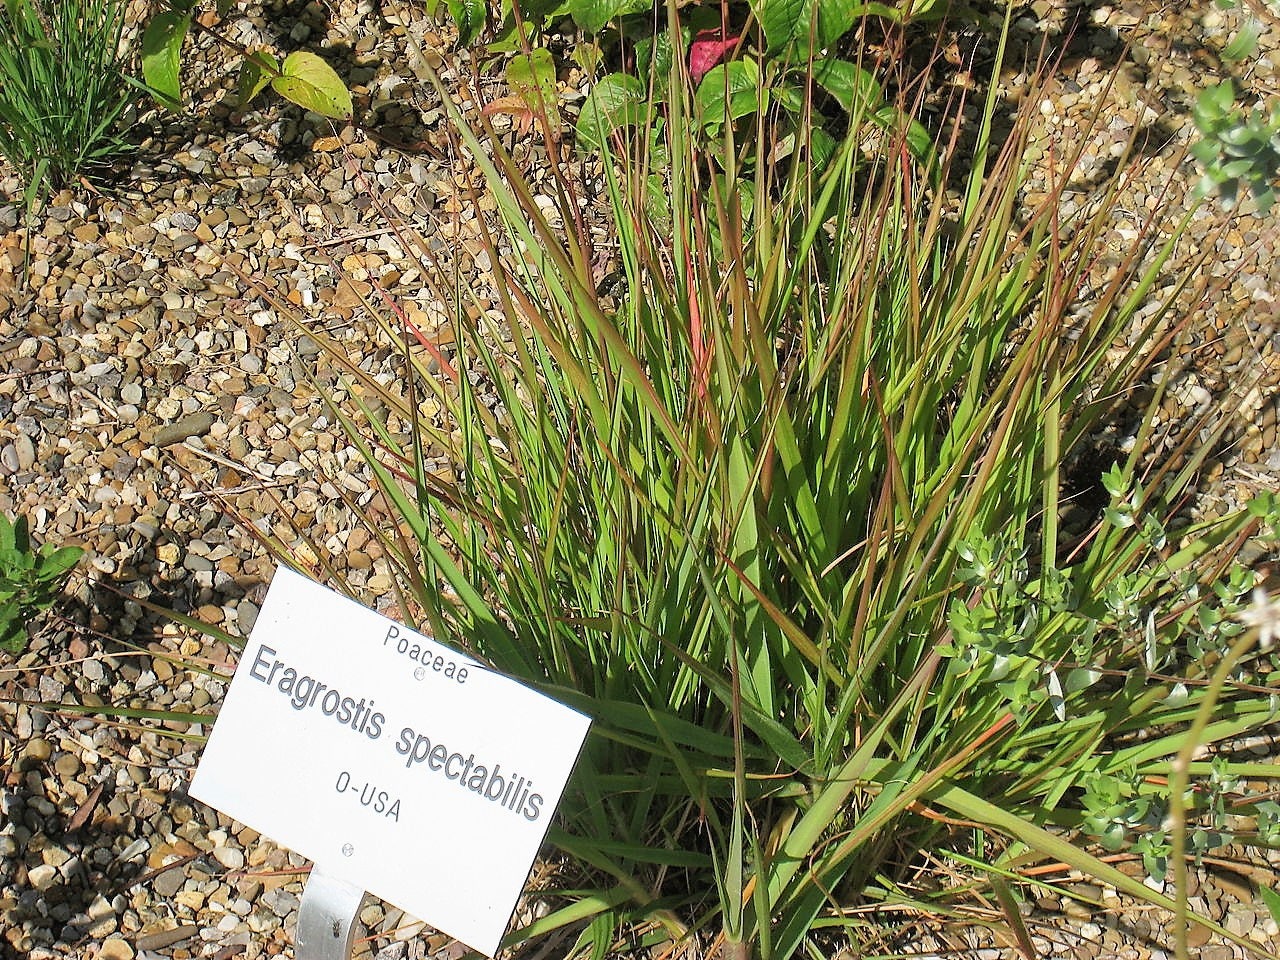 100 PURPLE LOVEGRASS Eragrostis Spectabilis Native Love Grass Flower Seeds